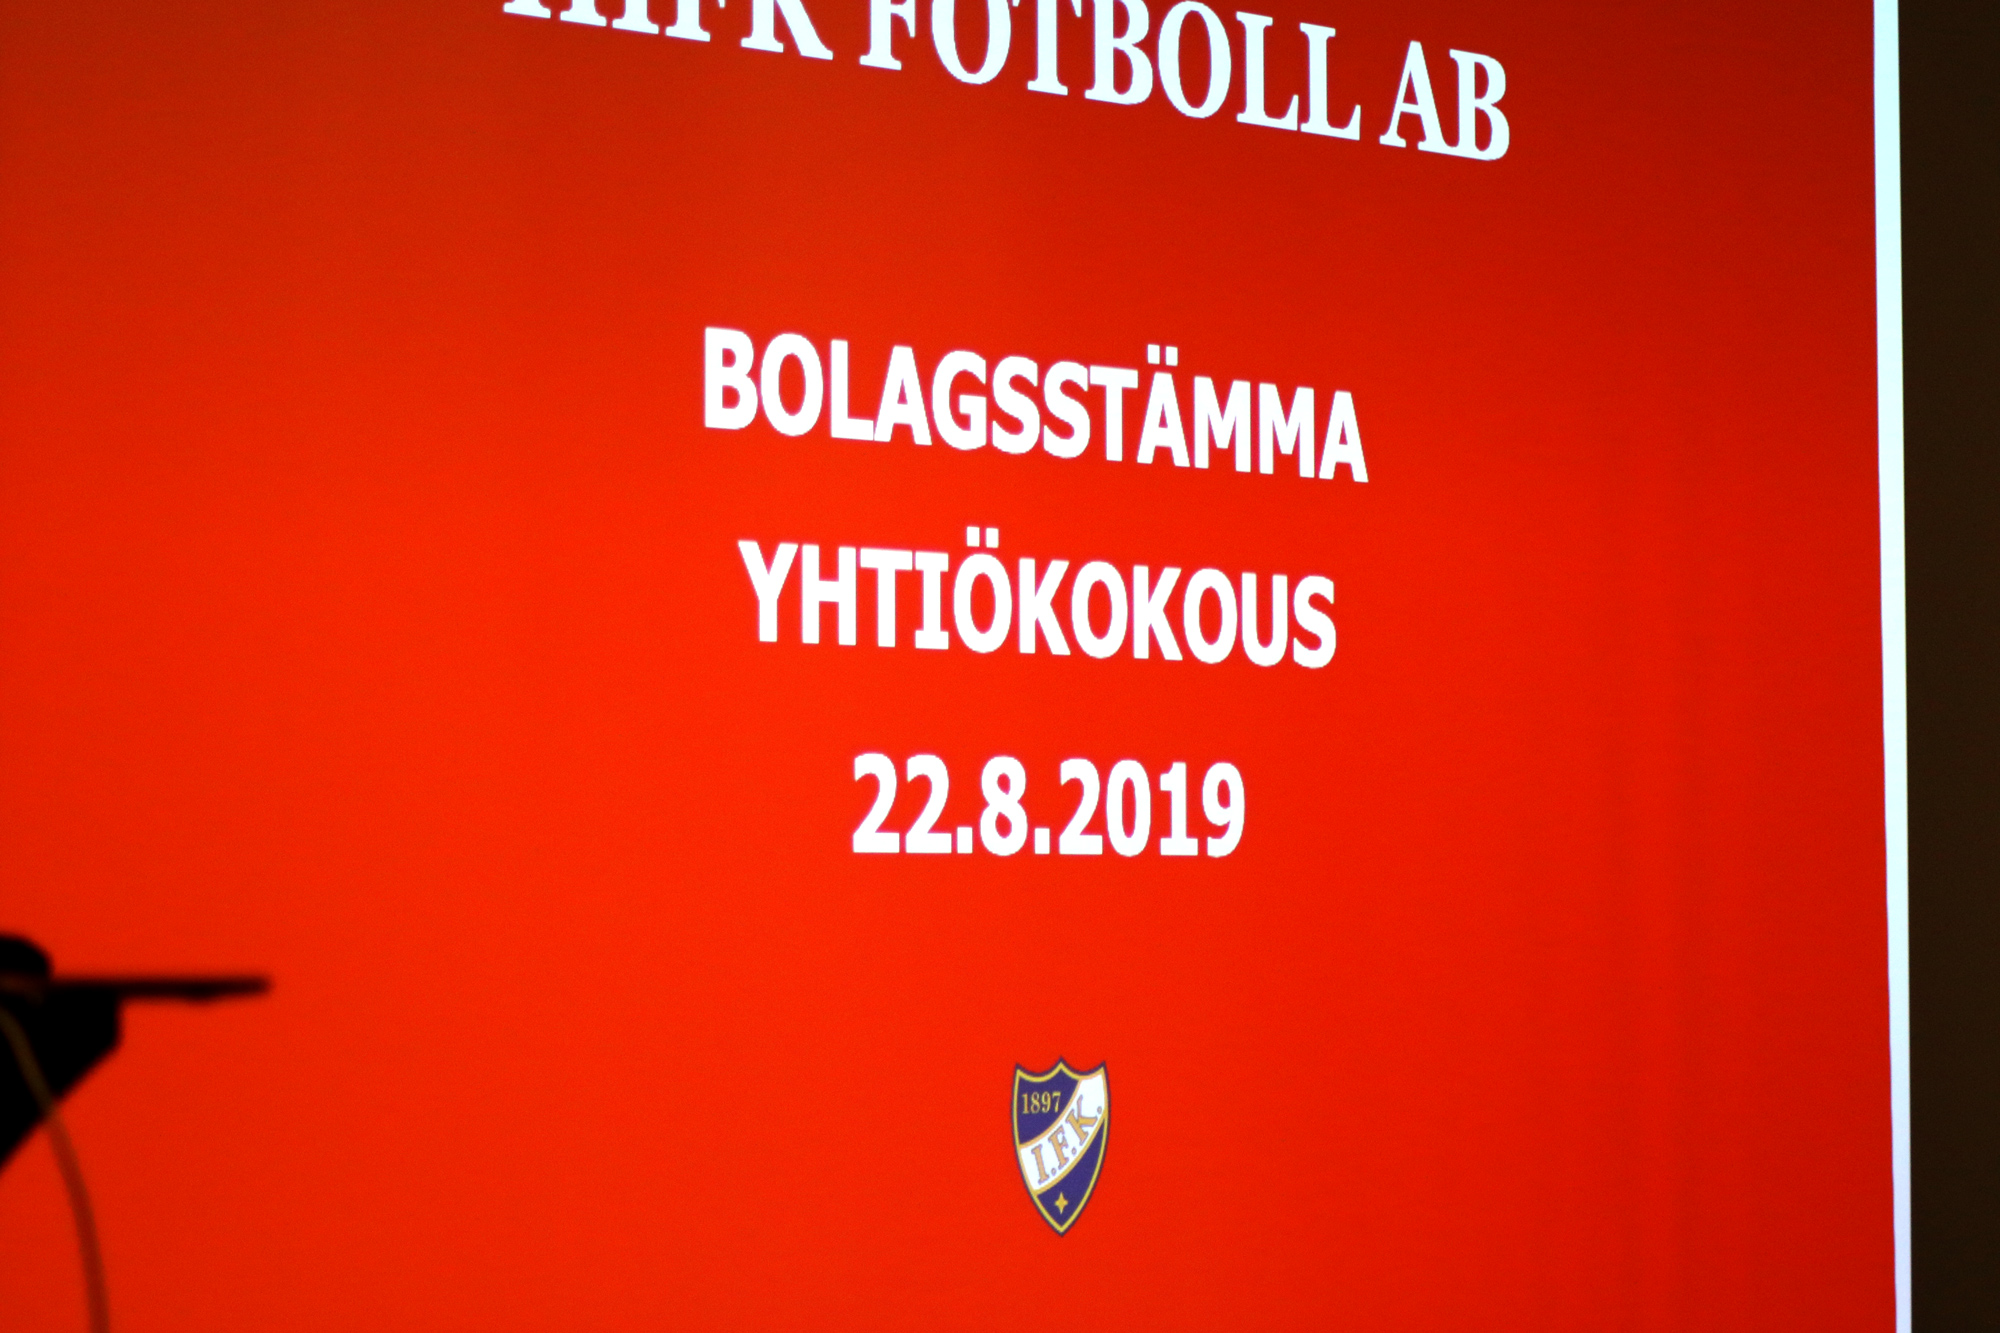 HIFK Fotboll Ab piti yhtiökokouksen 22.8.2019